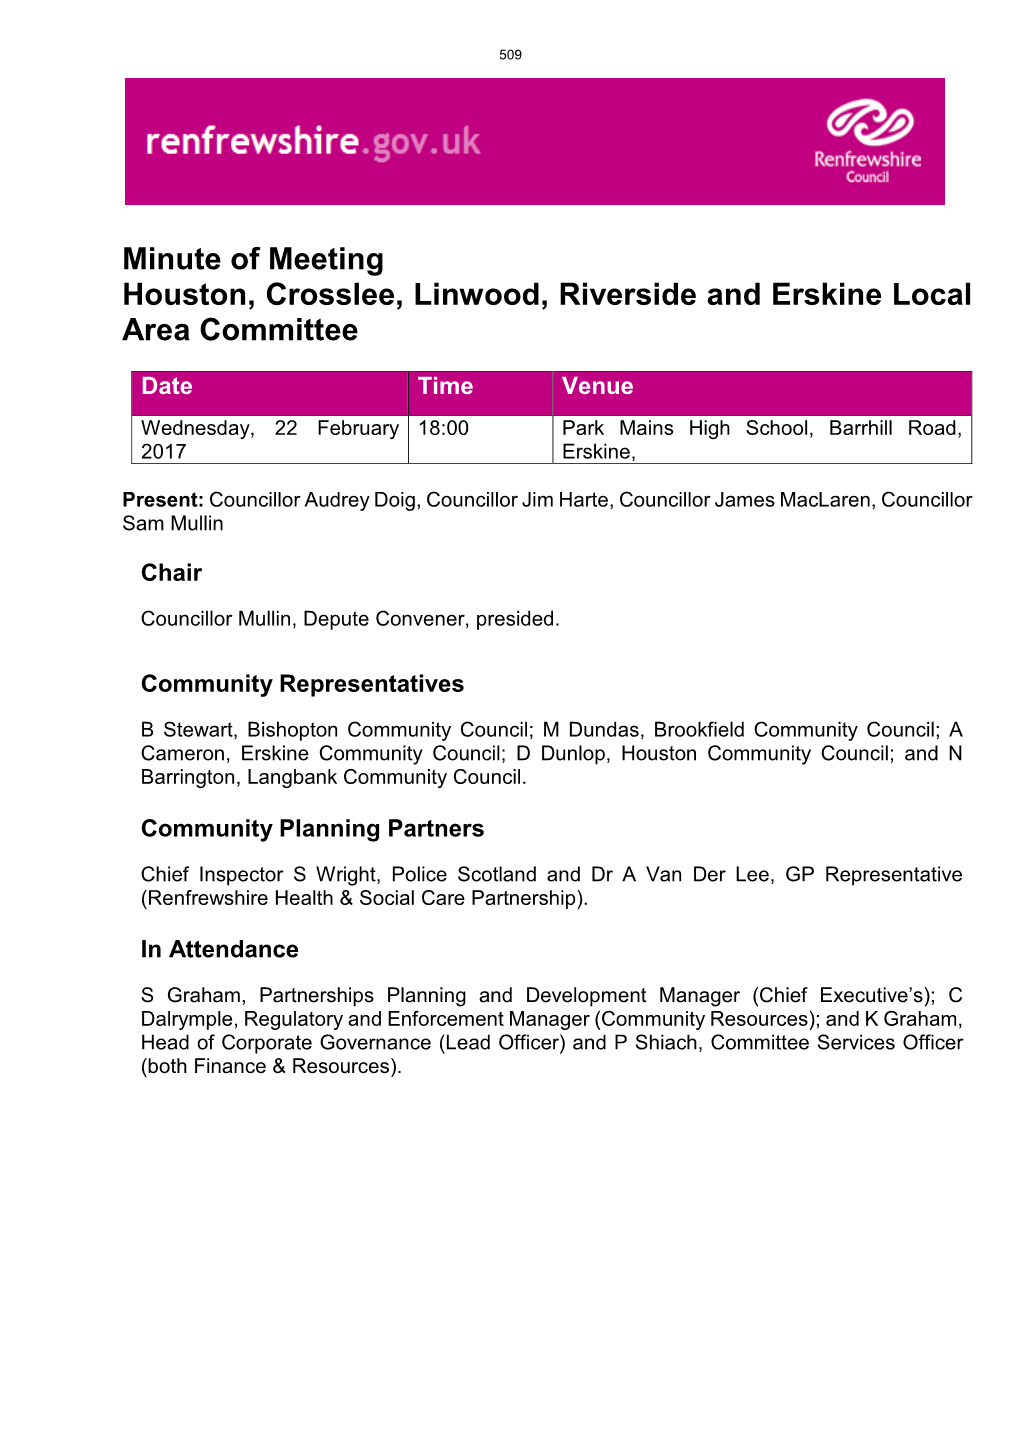 Minute of Meeting Houston, Crosslee, Linwood, Riverside and Erskine Local Area Committee